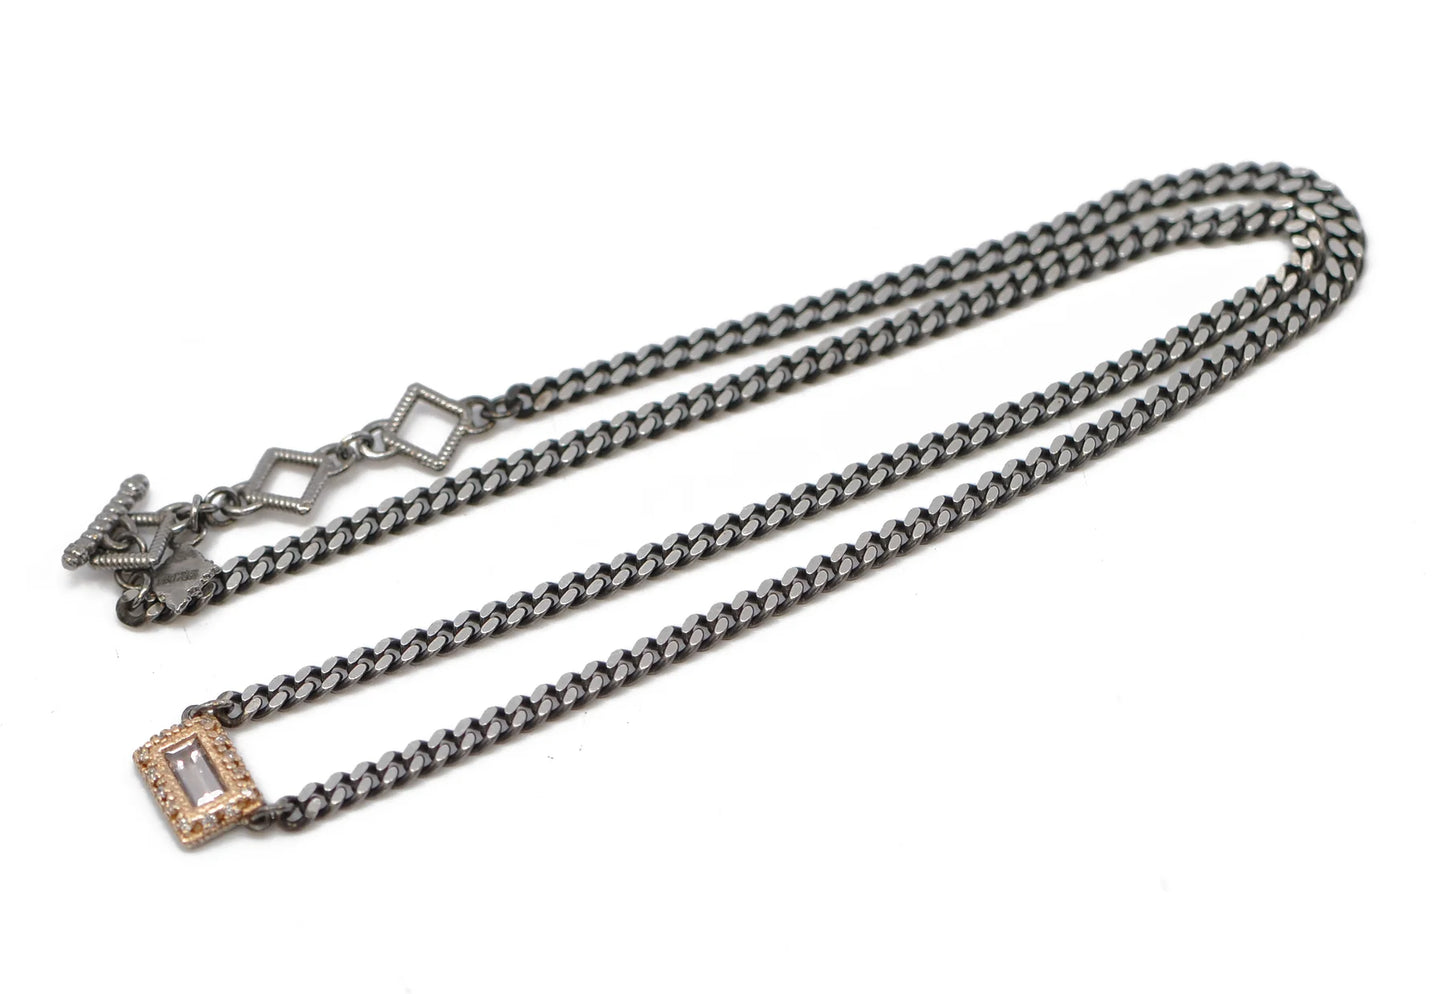 16.5" Baguette Peach Morganite Necklace Necklaces Armenta   